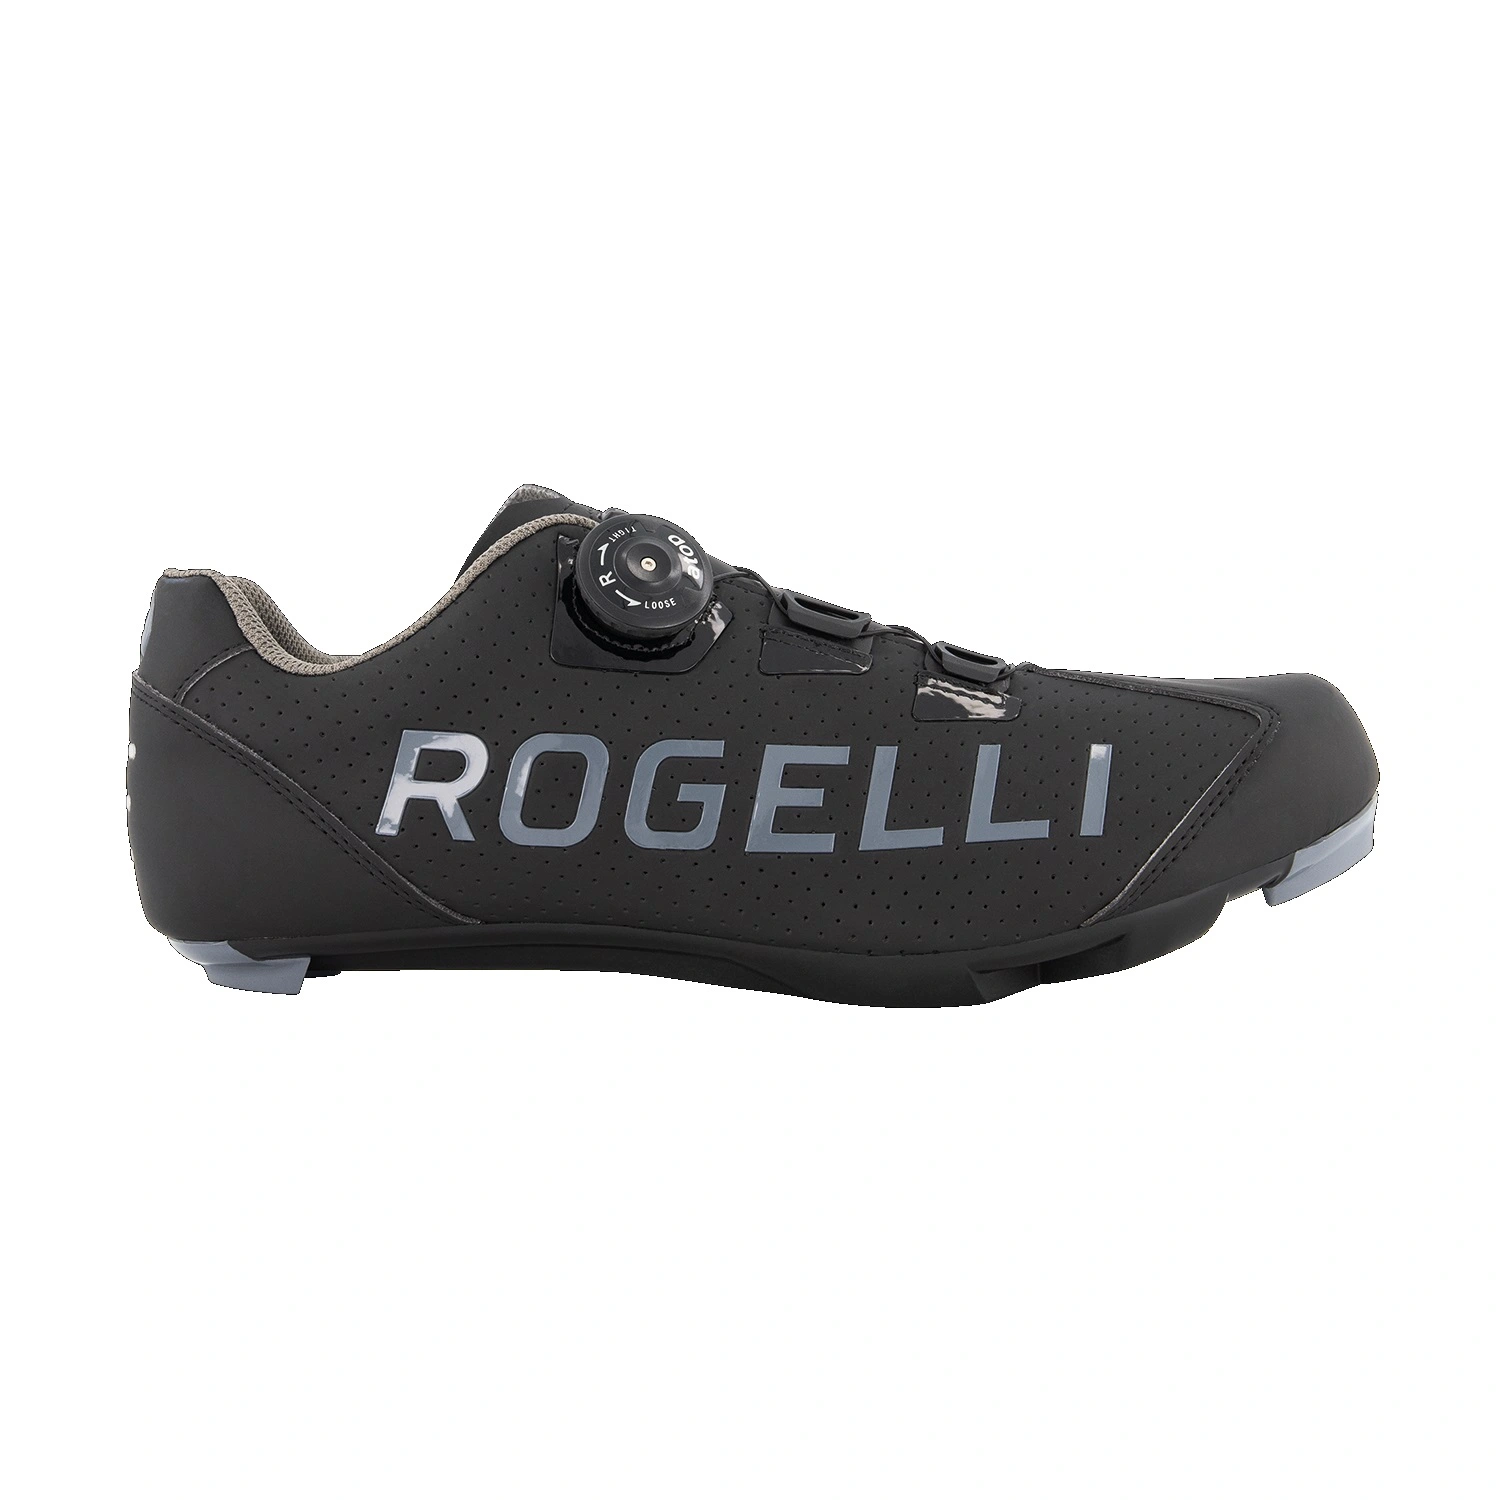 Rogelli Race wielrenschoenen